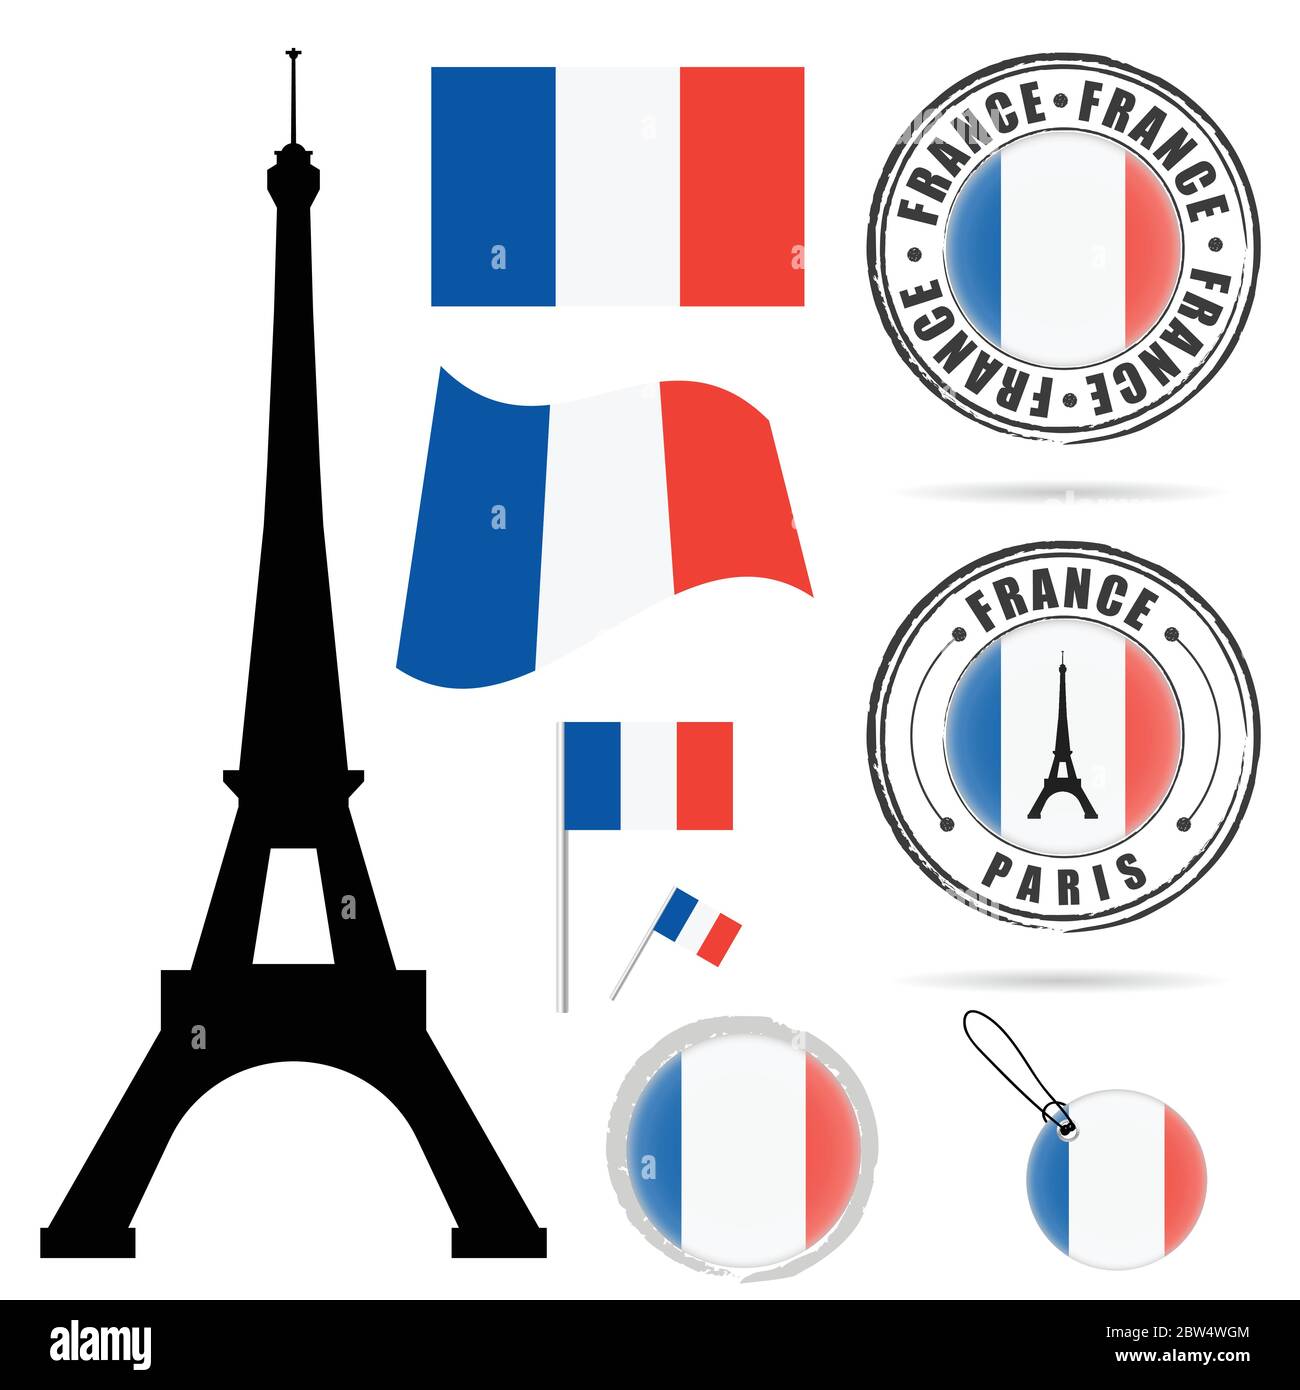 frankreich Flagge mit Tour eiffel Design Illustration in bunt auf weiß gesetzt Stock Vektor